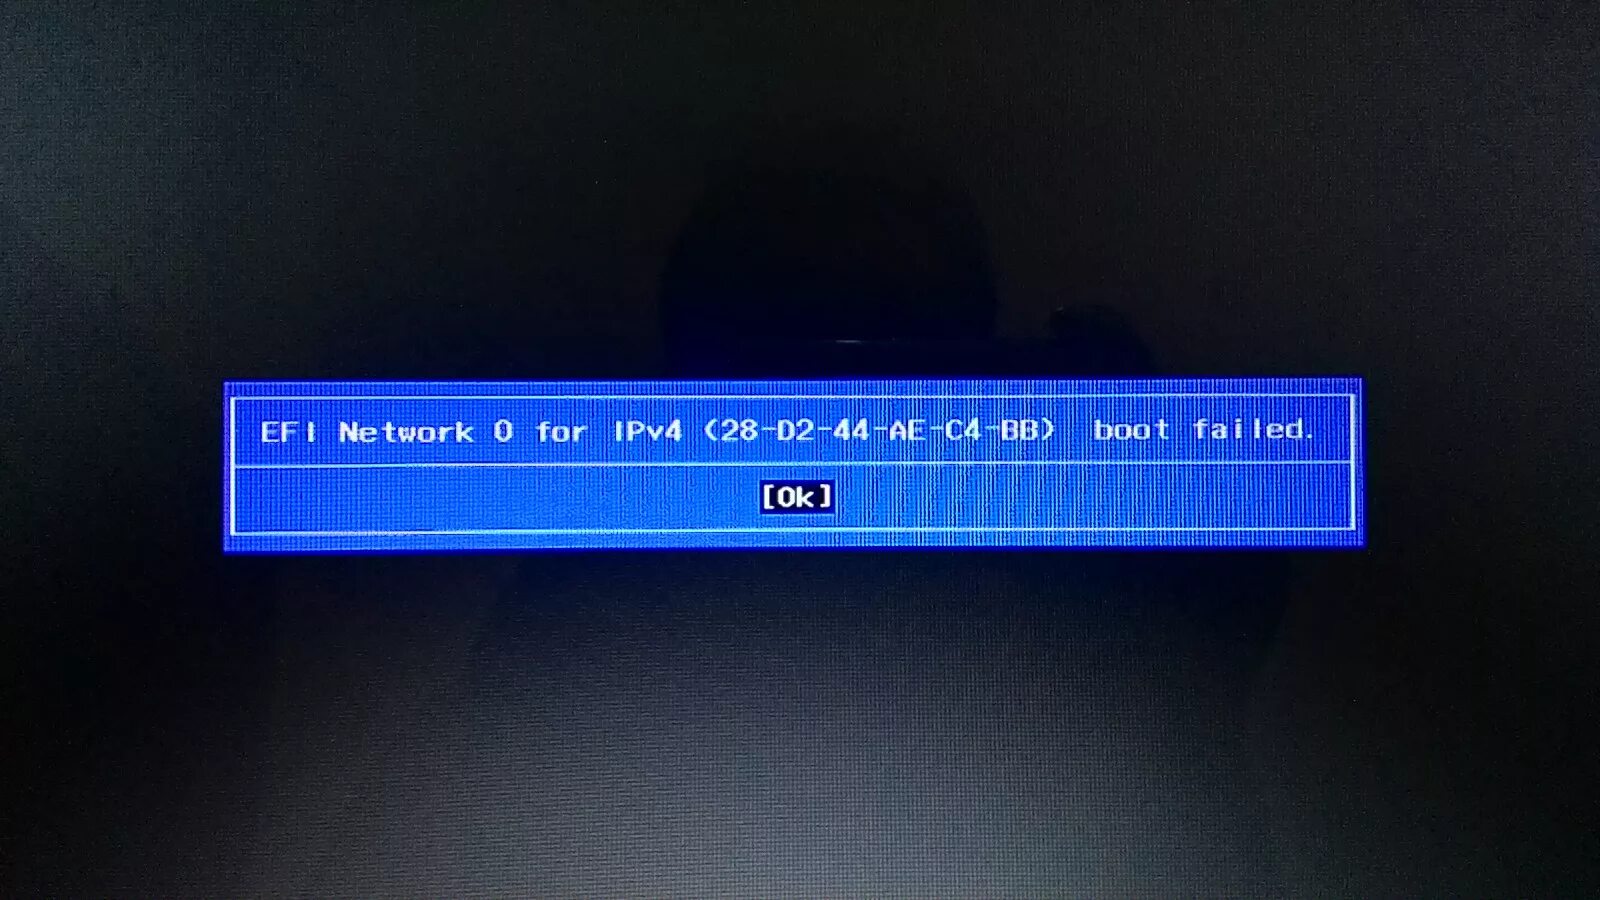 Net error 0. EFI Network 0 for ipv4 Boot failed Lenovo. EFI PXE 0 for ipv4 Boot failed. EFI Network 0 for ipv4. EFI Network 0 for ipv6 Boot failed Lenovo.